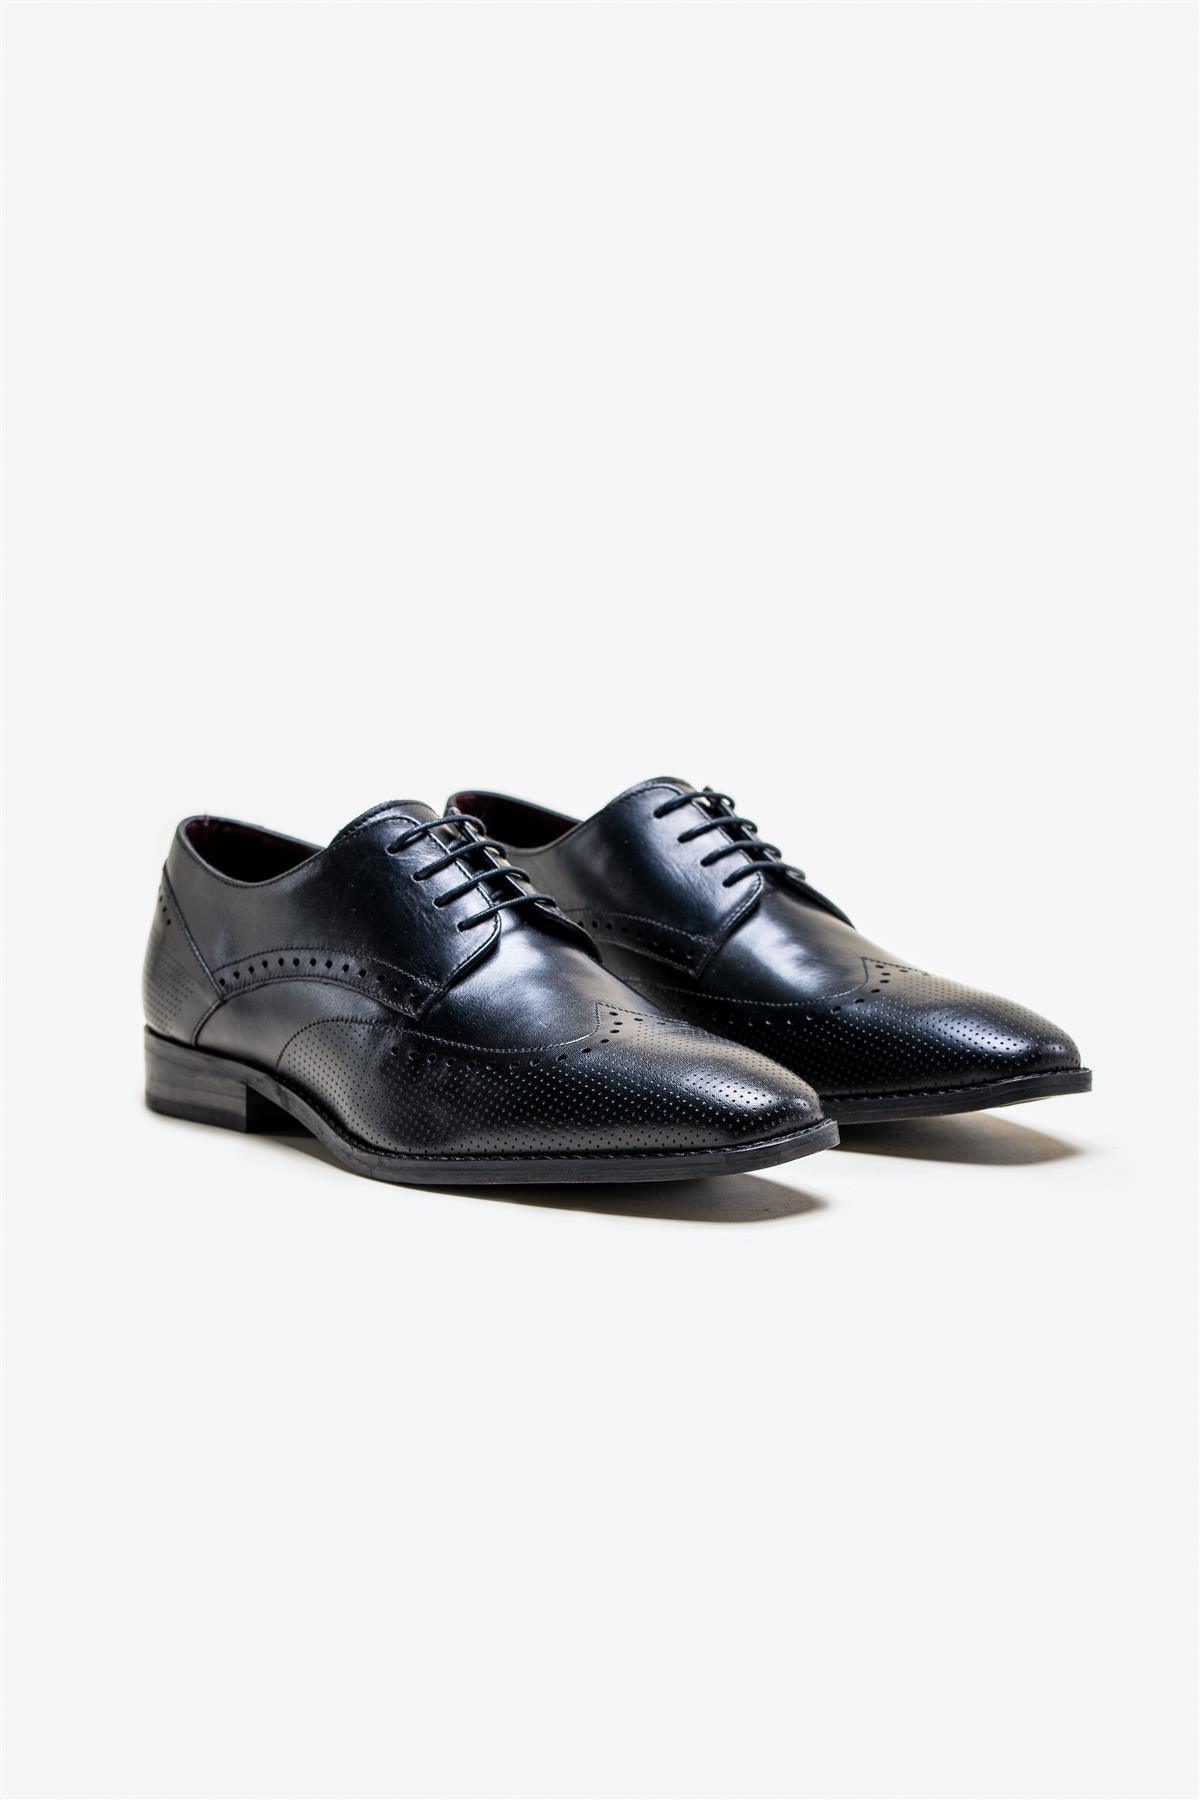 Lisbon black shoes front